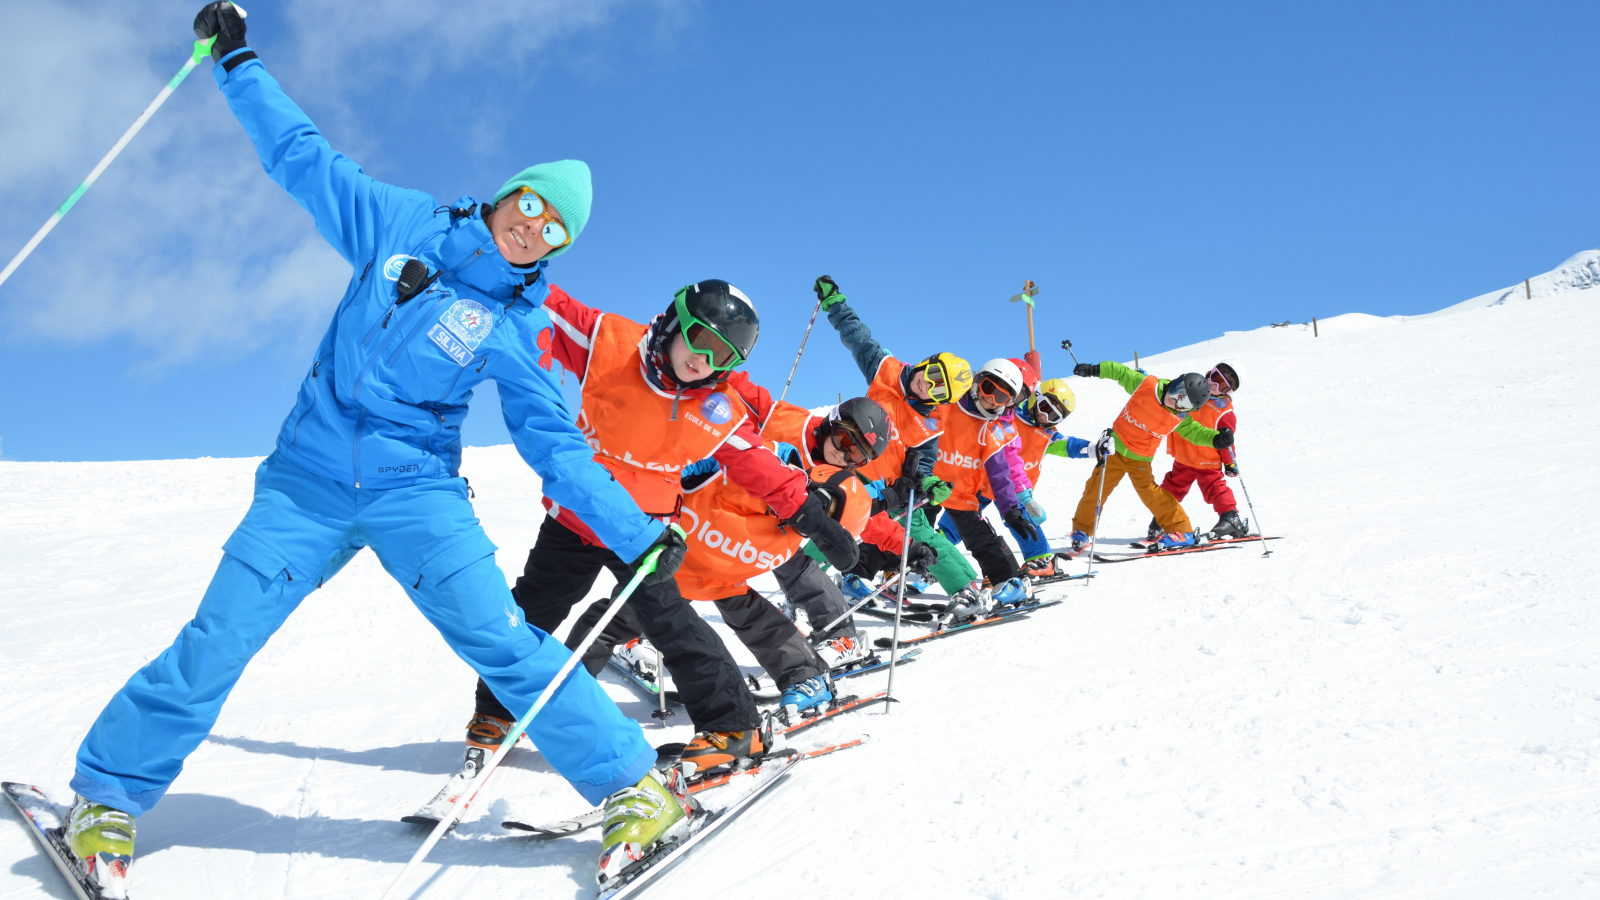 European ski school